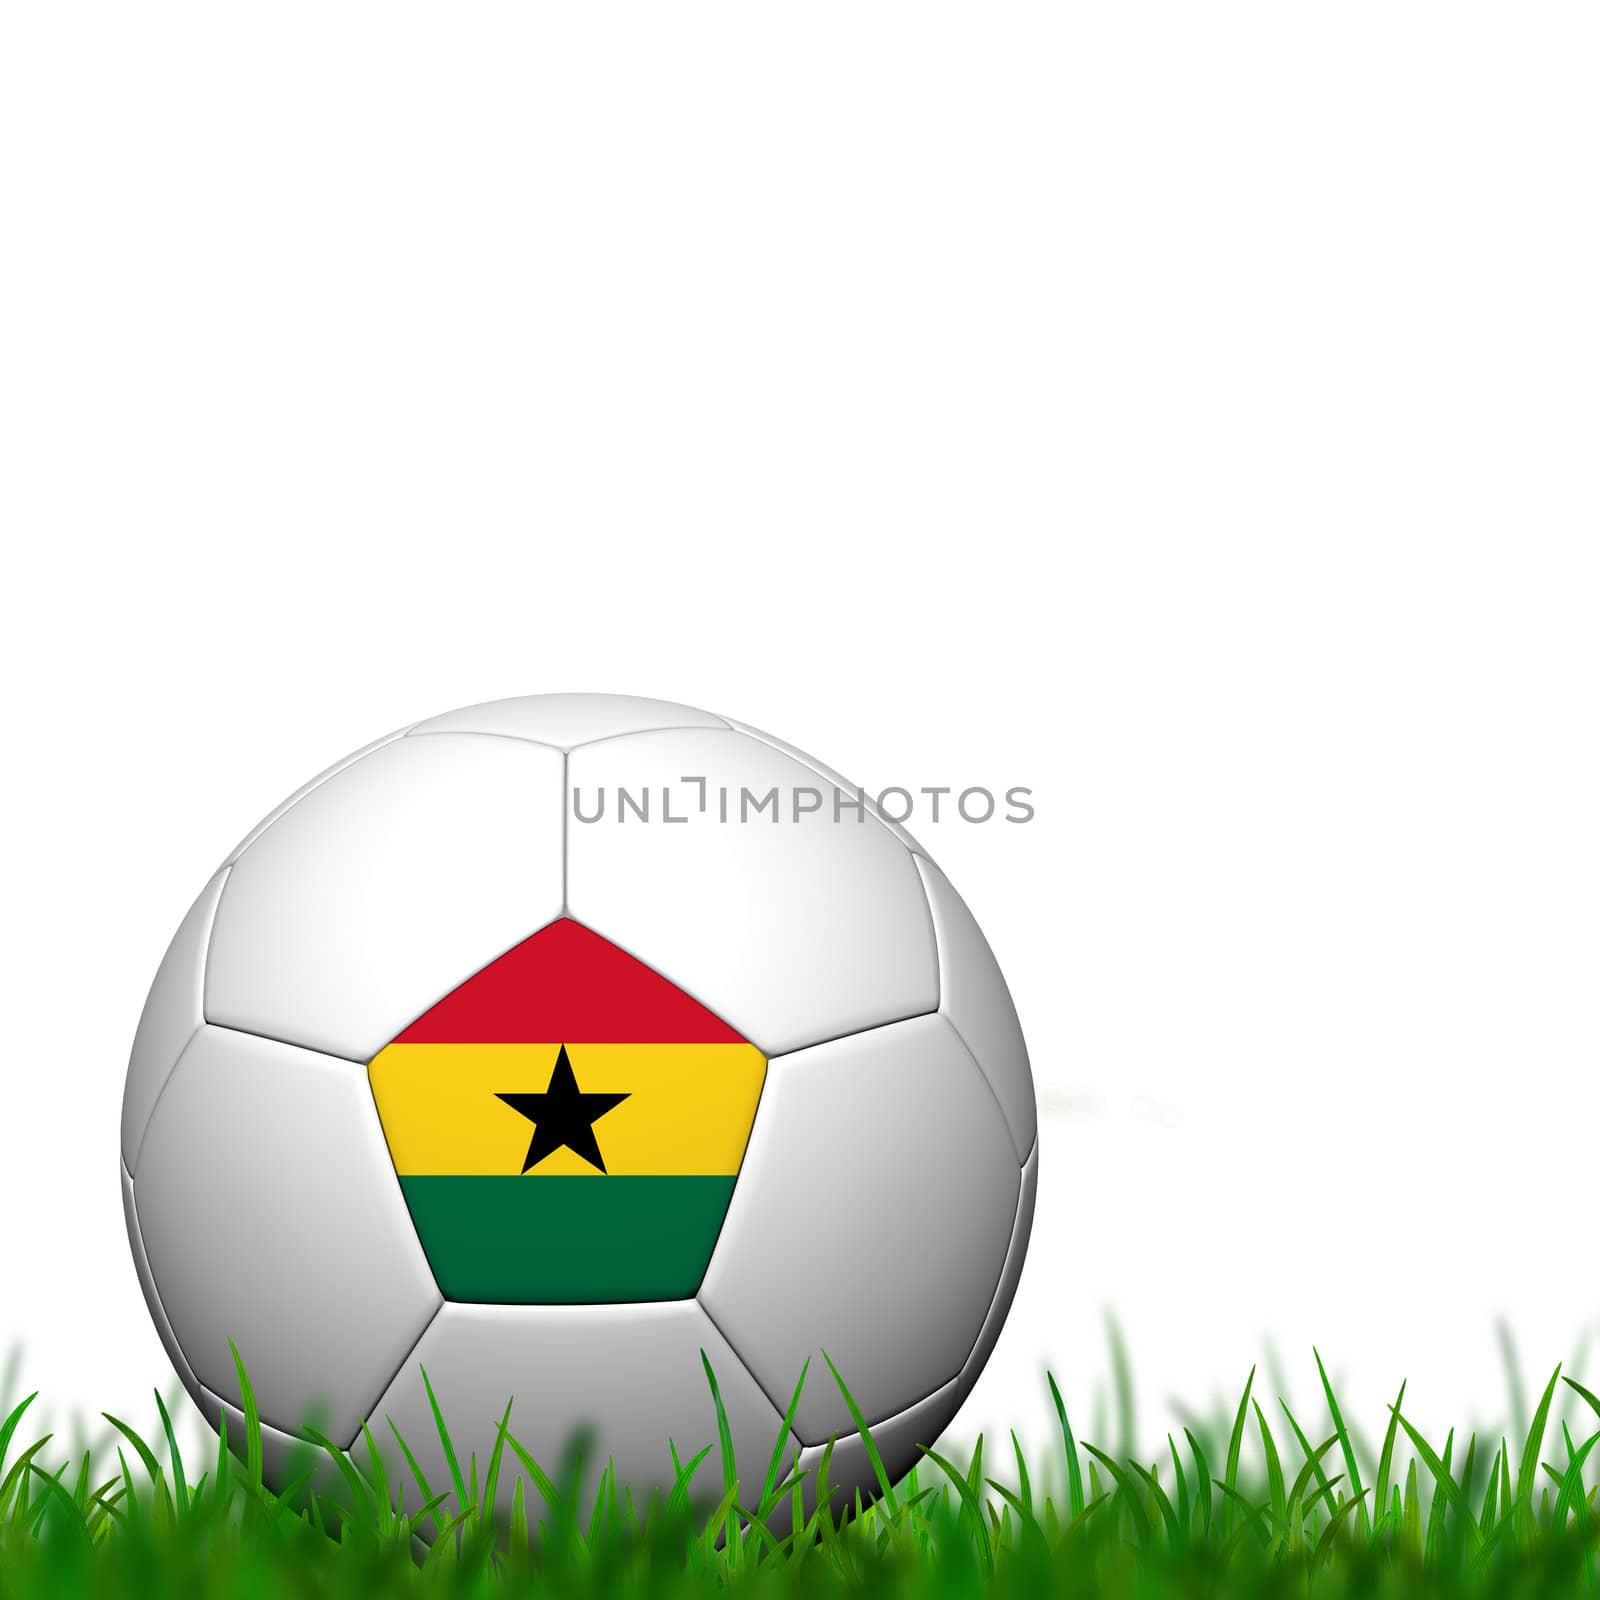 3D Soccer balll  Ghana Flag Patter on green grass over white bac by jakgree